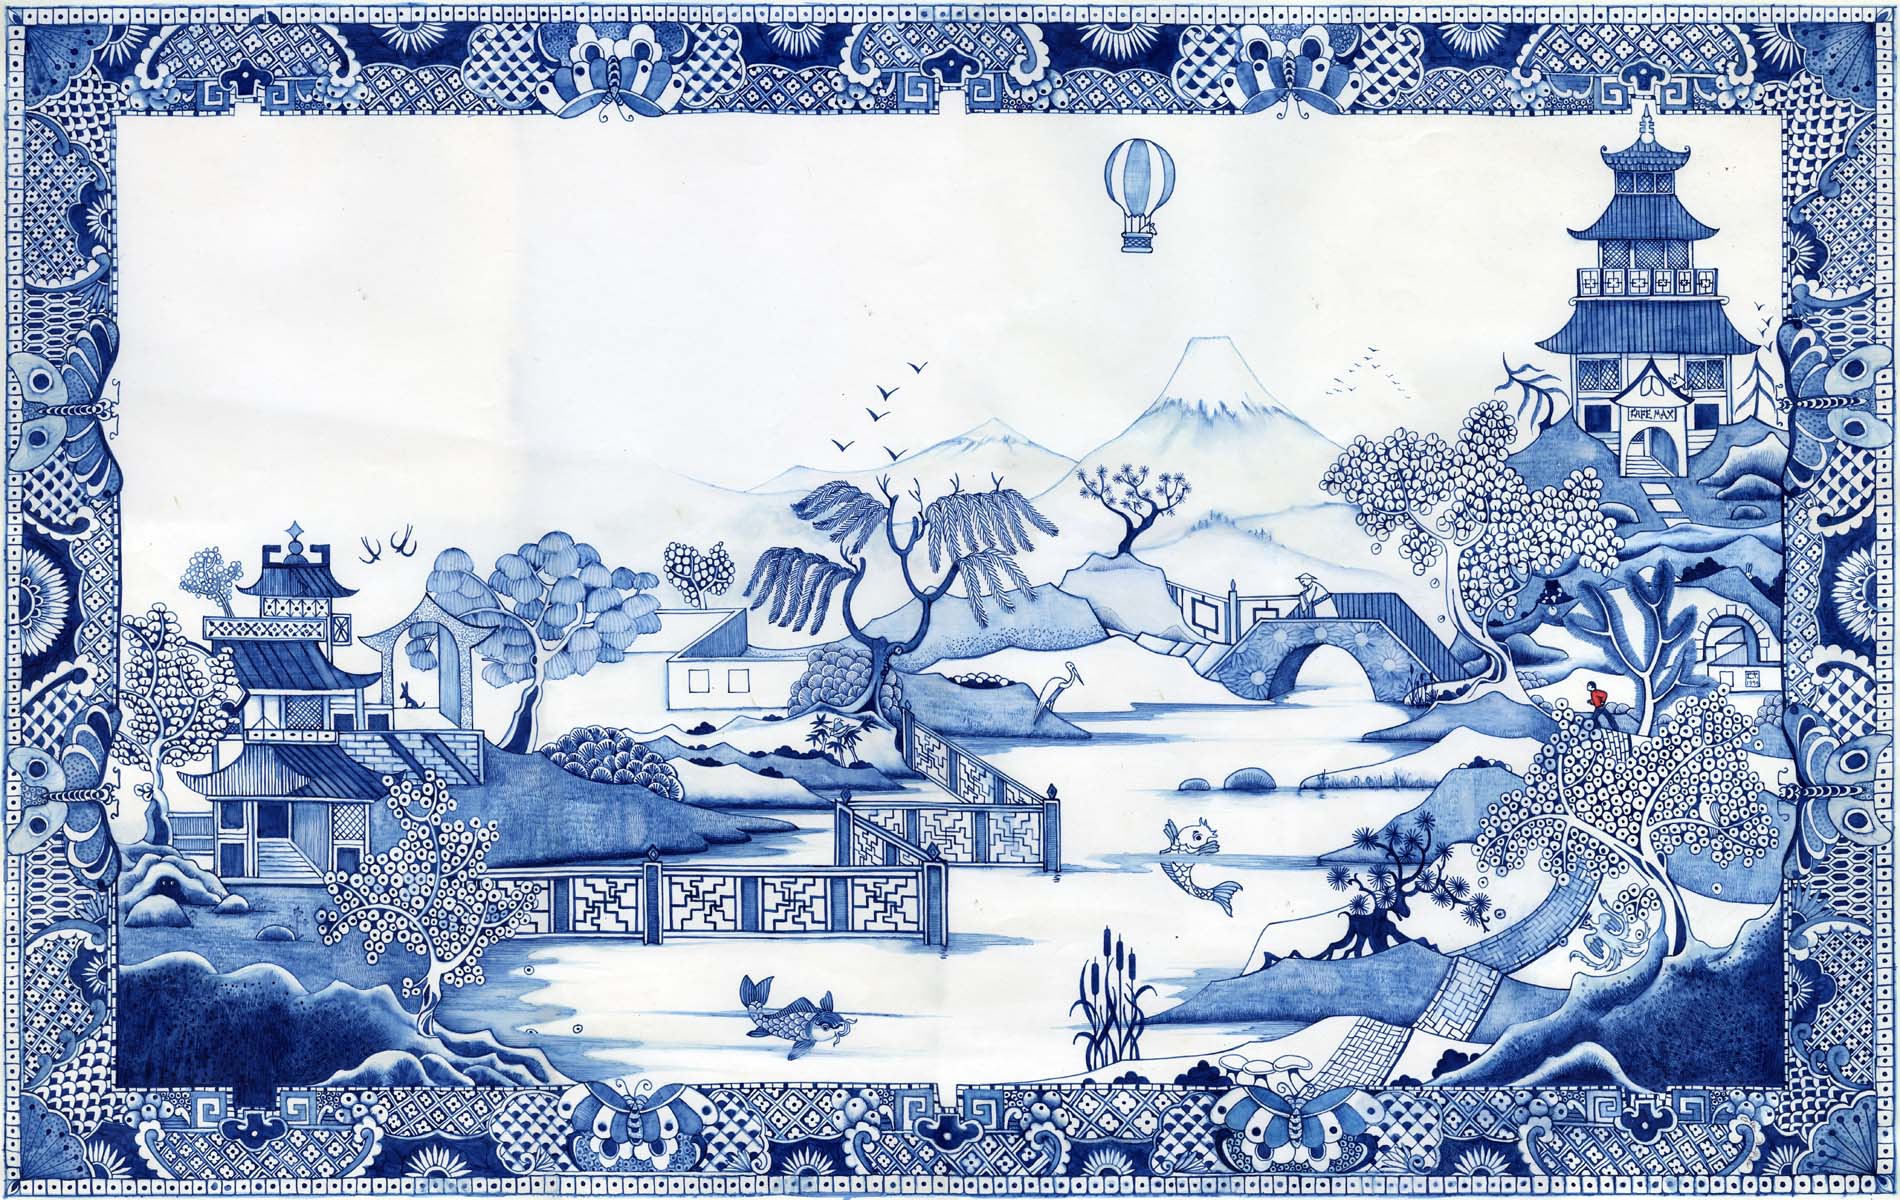 papel tapiz de patrón de sauce,azul,porcelana azul y blanca,invierno,textil,porcelana